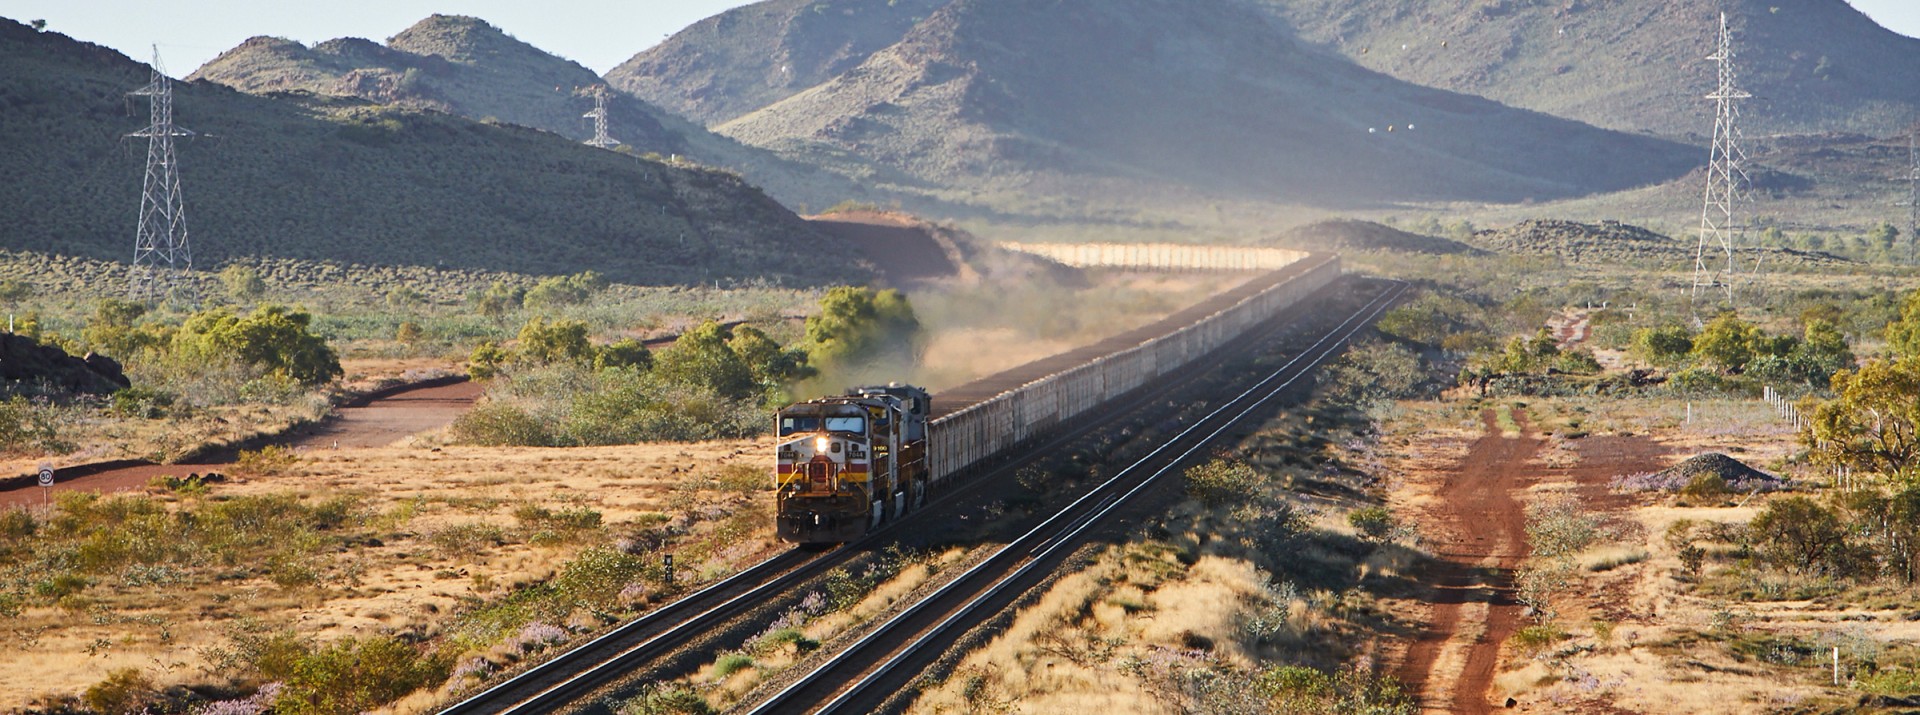 Ein 2,4 km langer Schwerlastgüterzug beladen mit Eisenerz fährt durch eine karge Berglandschaft in Australien.